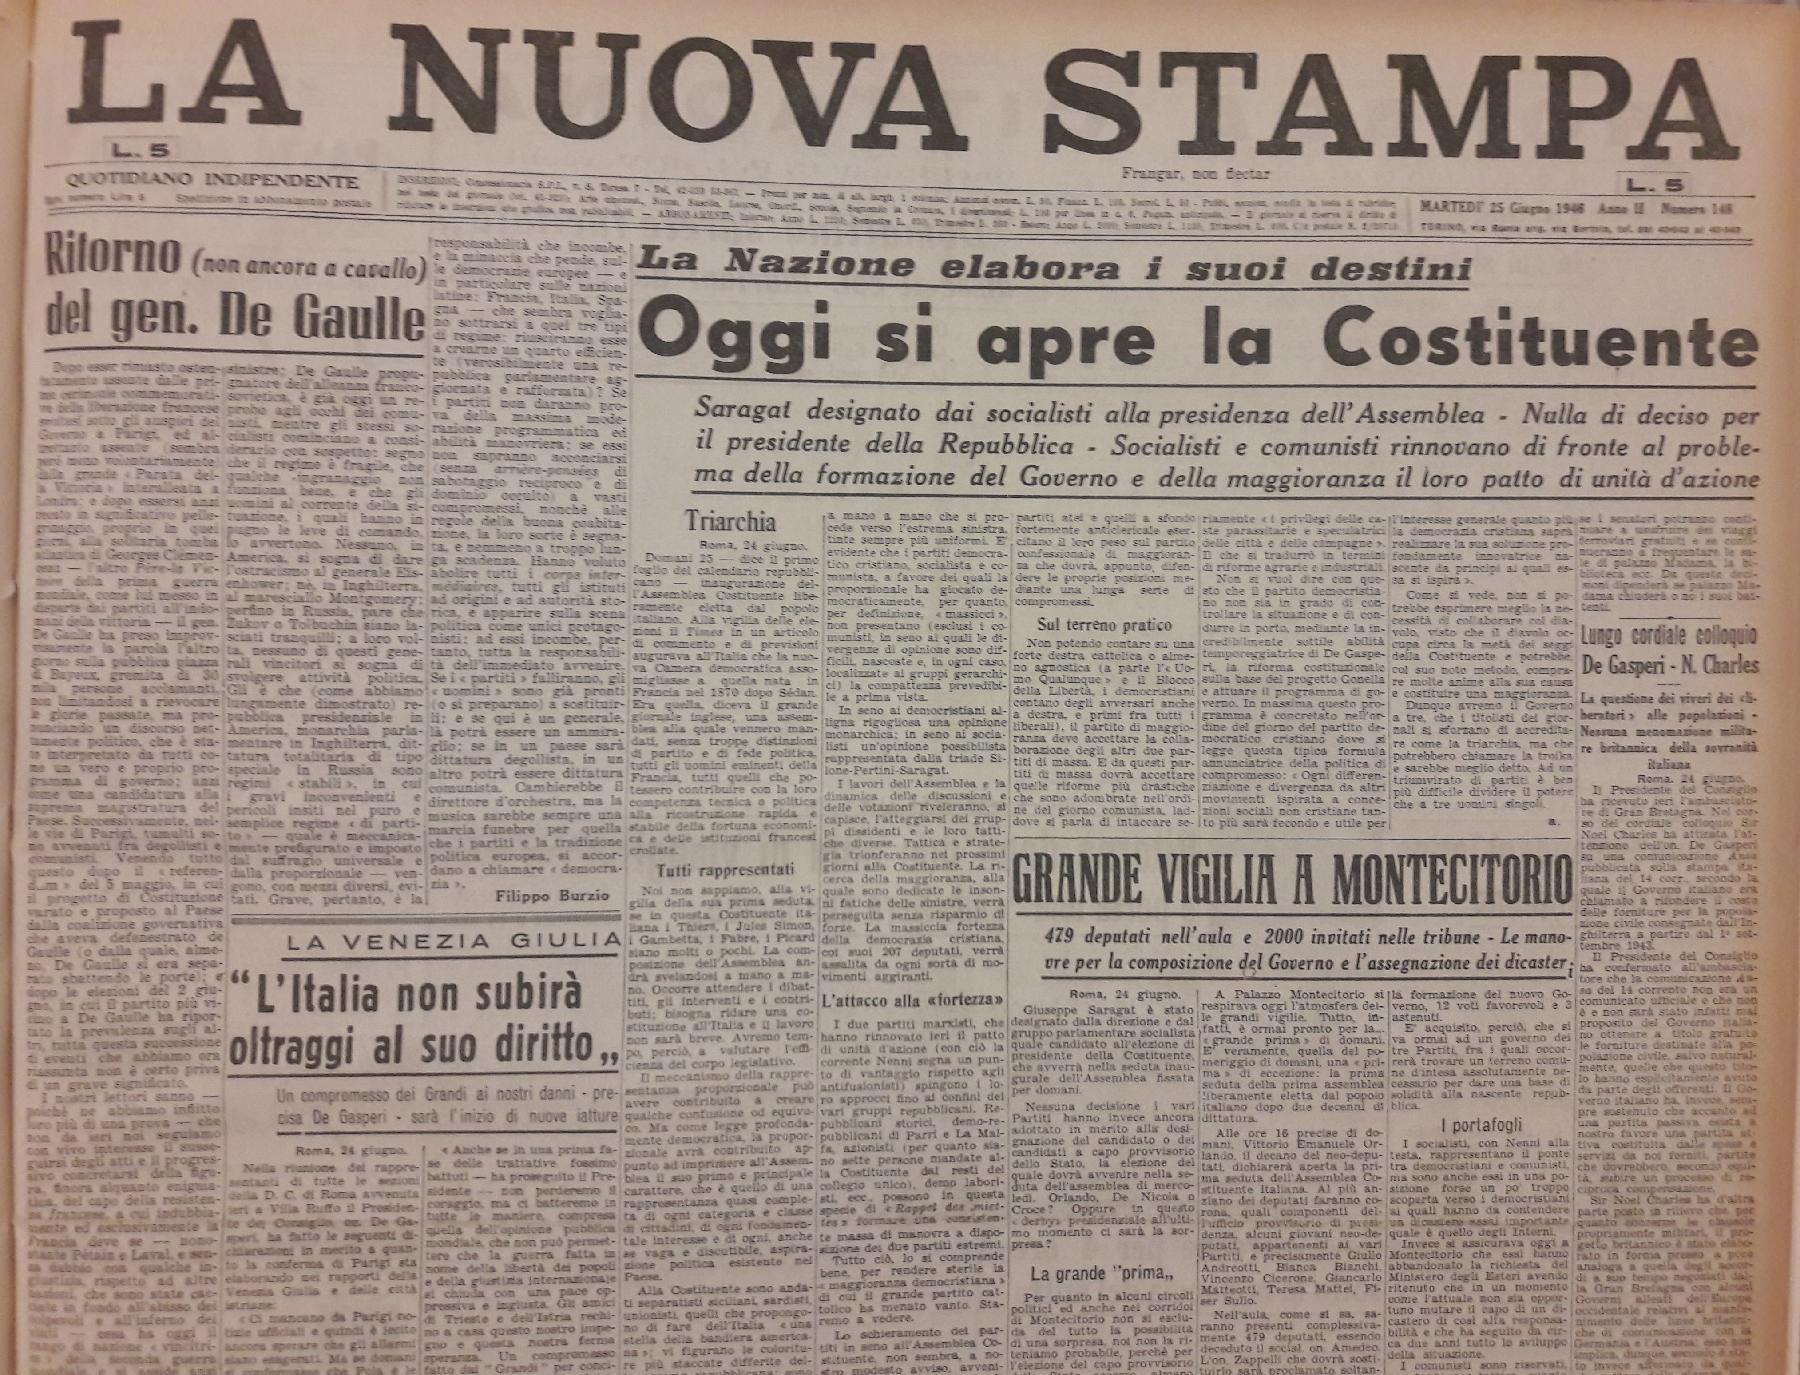 25 giugno 1946 - Prima pagina del quotidiano "La Nuova Stampa".